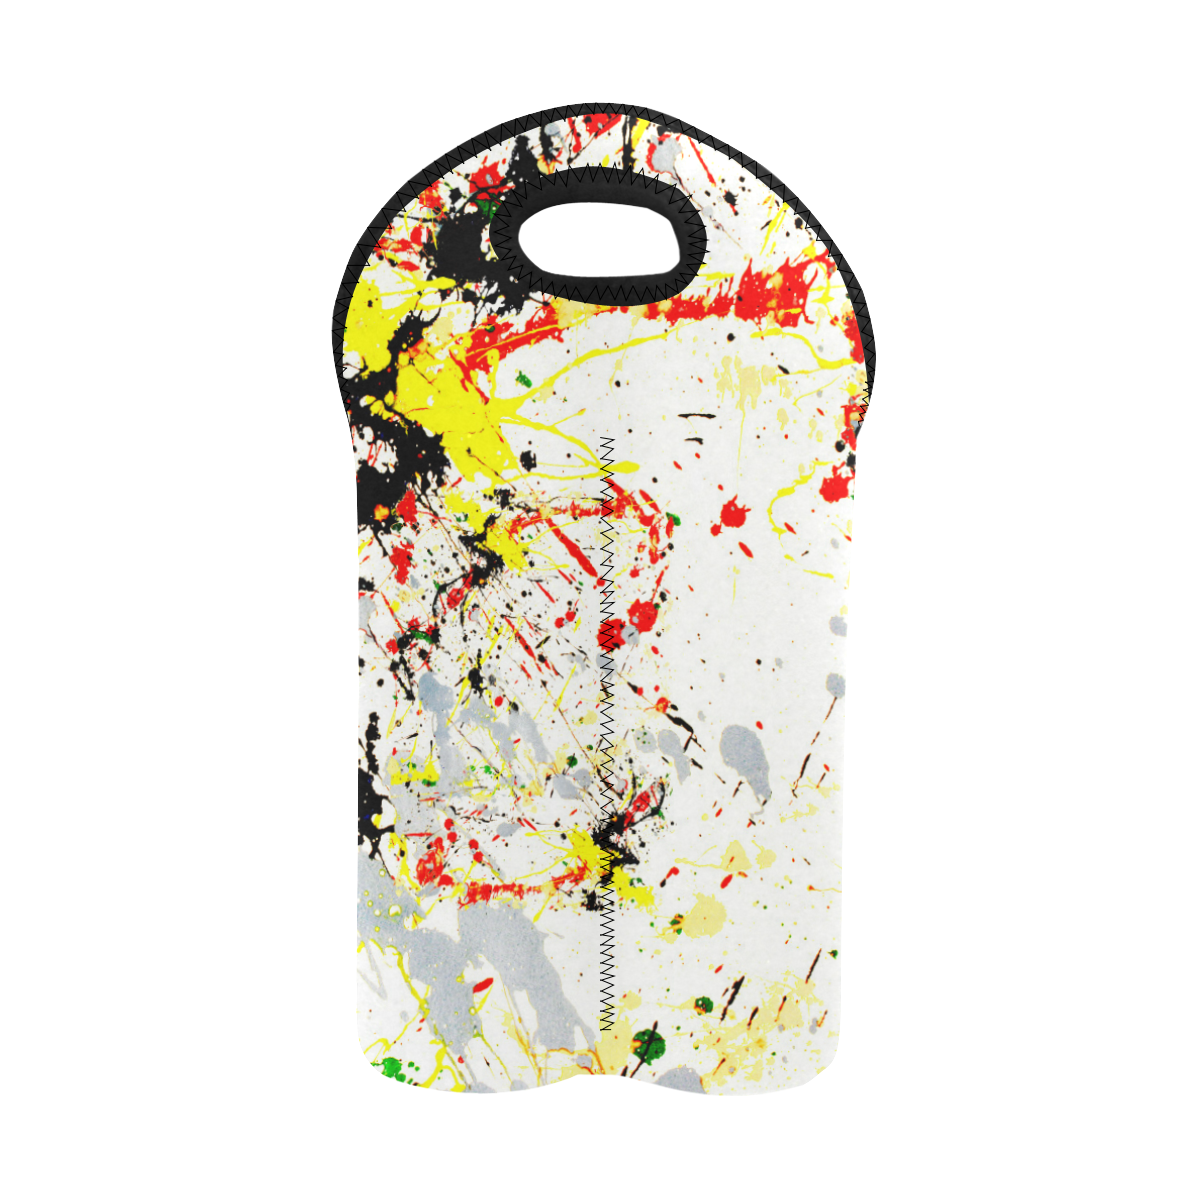 Black, Red, Yellow Paint Splatter 2-Bottle Neoprene Wine Bag